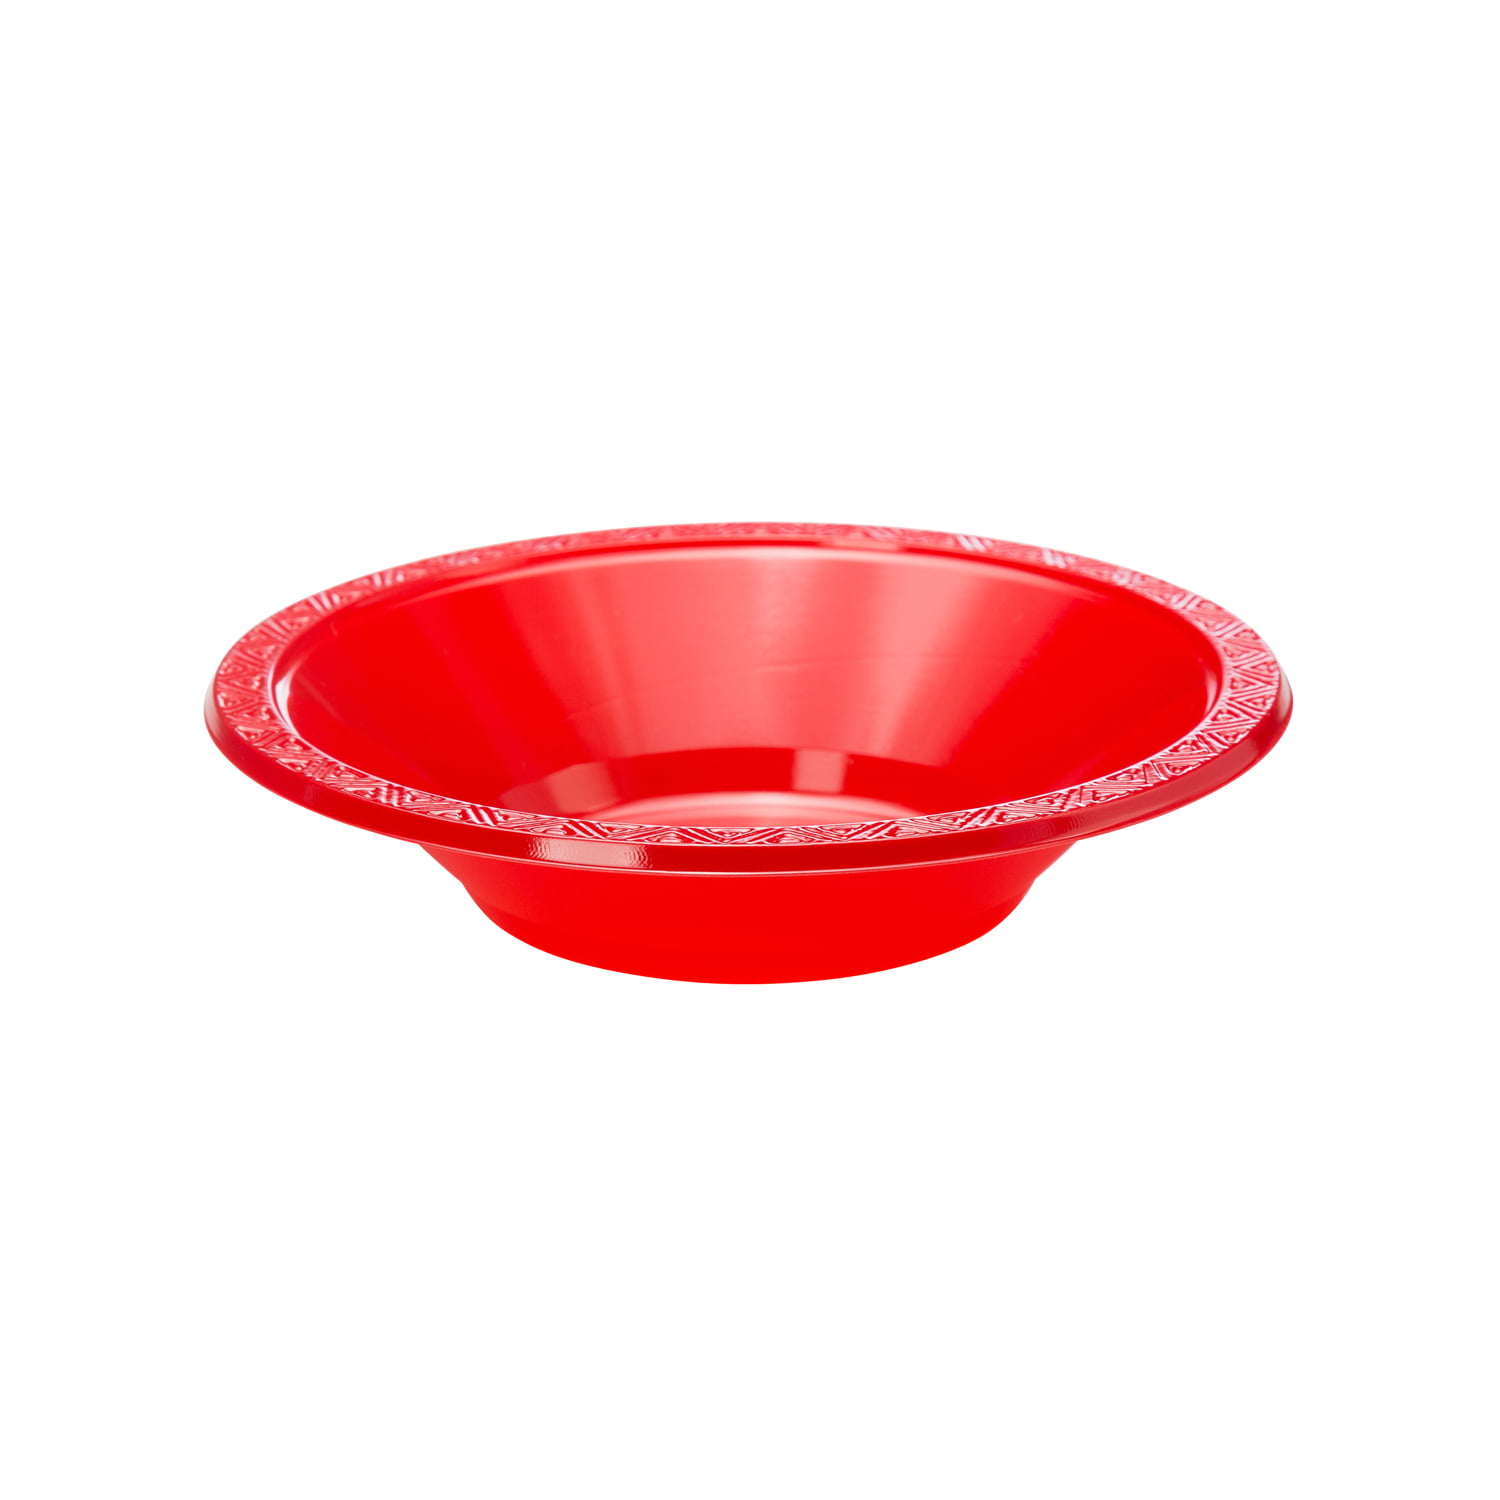 Exquisite Disposable Plastic Bowls - 40 Piece Party Pack - Plastic Soup  Bowls, 12 oz, Ivory